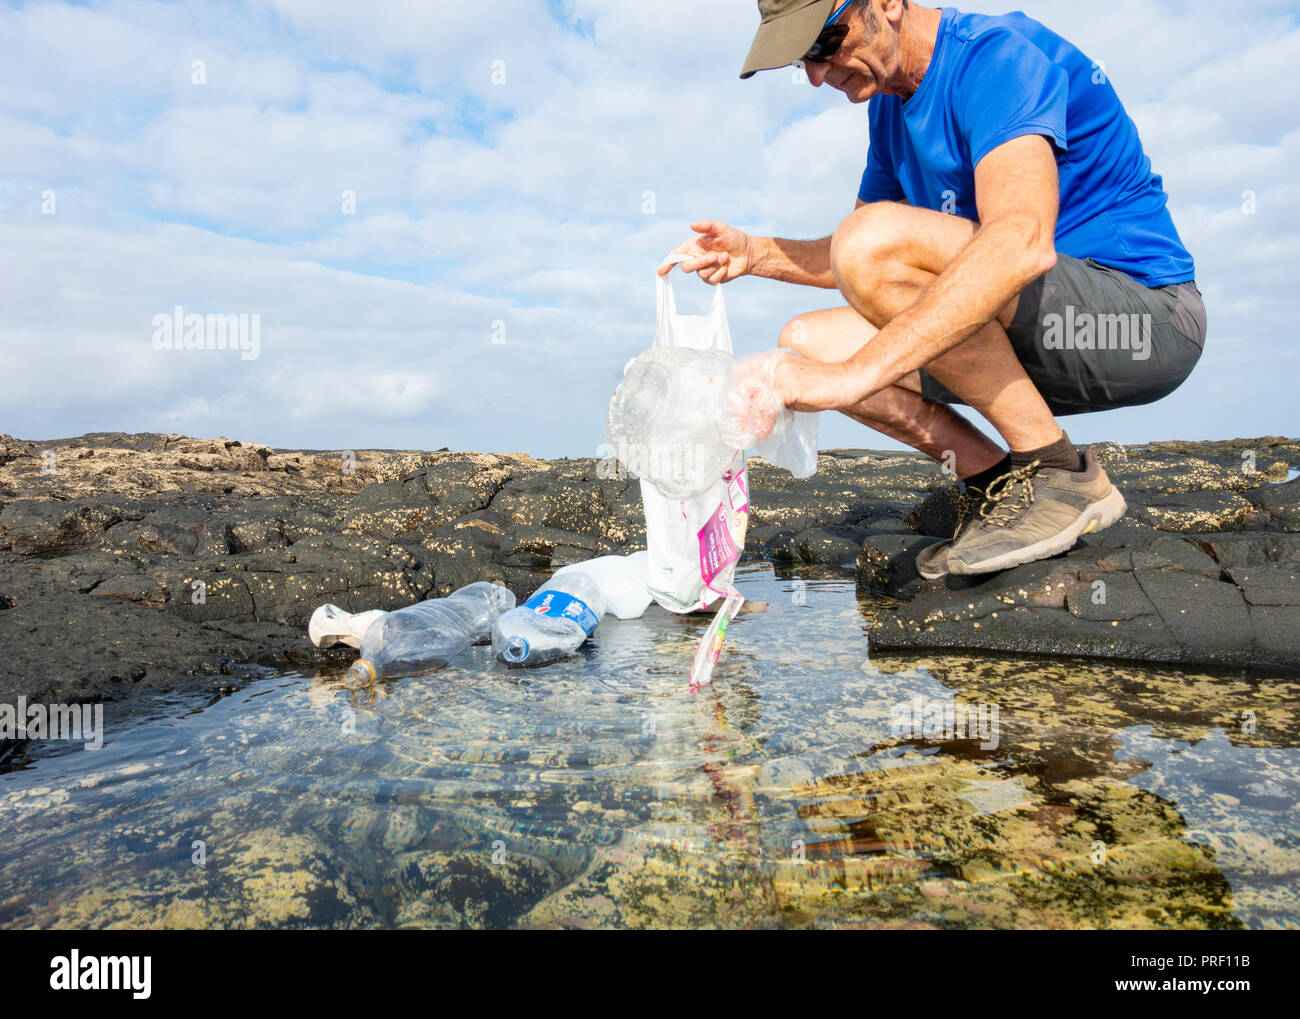 Un Plogger/jogger recueille des ordures en plastique de la plage rockpool durant son jogging Banque D'Images